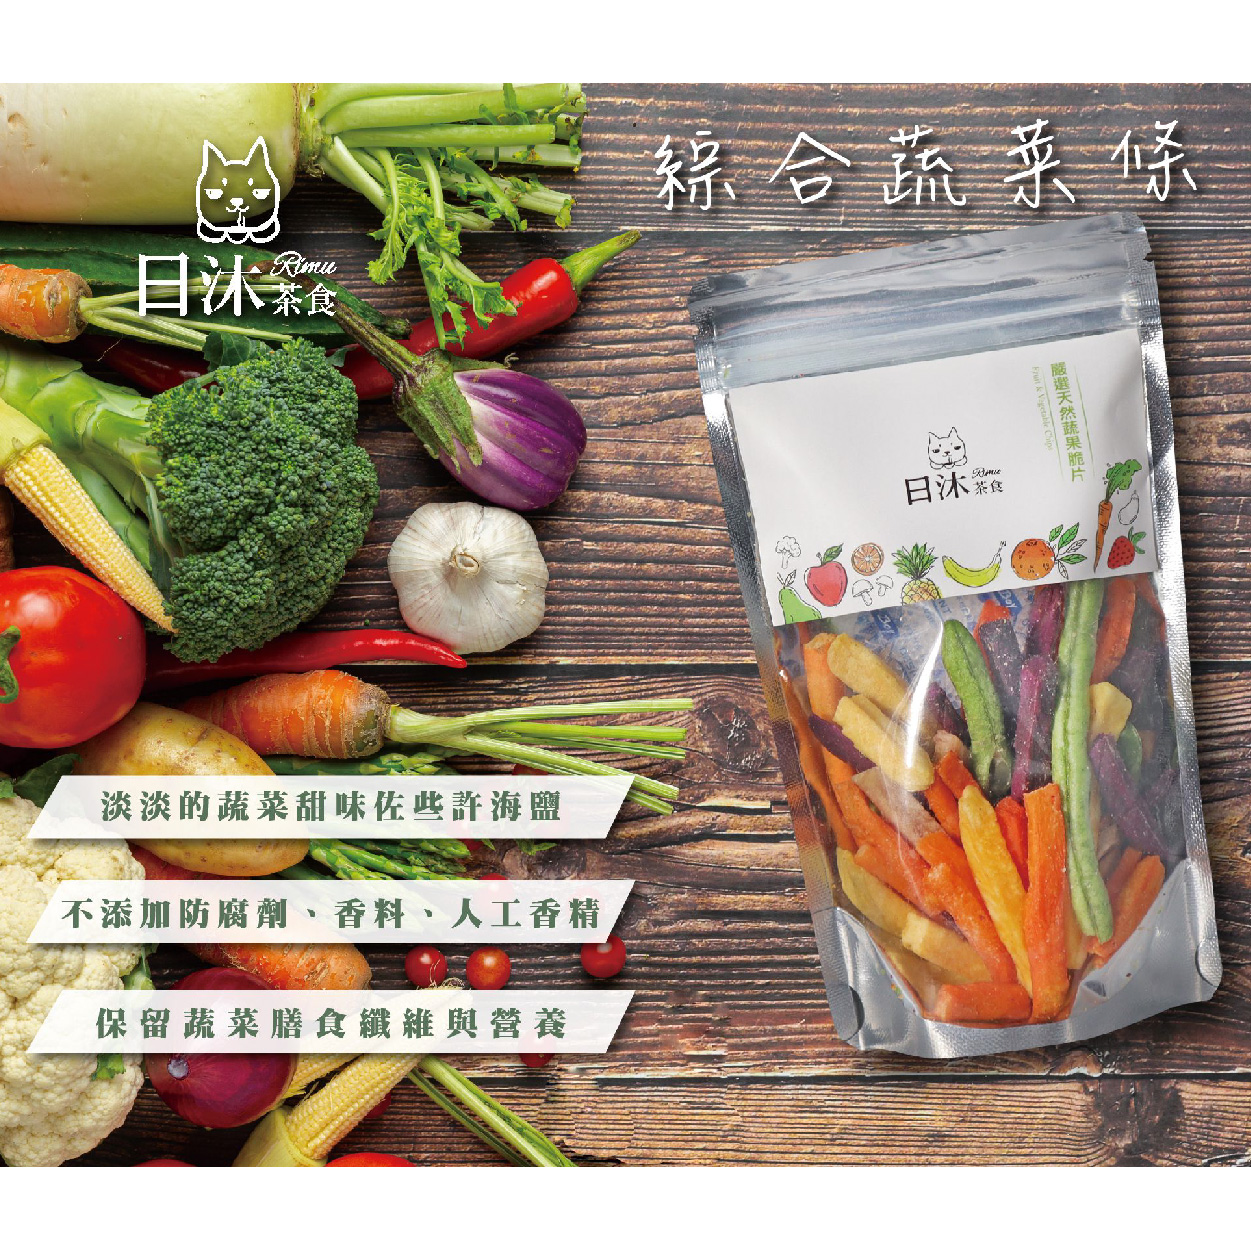 日沐茶食 綜合蔬菜條 天然蔬菜製作 補足外食族所欠缺的營養